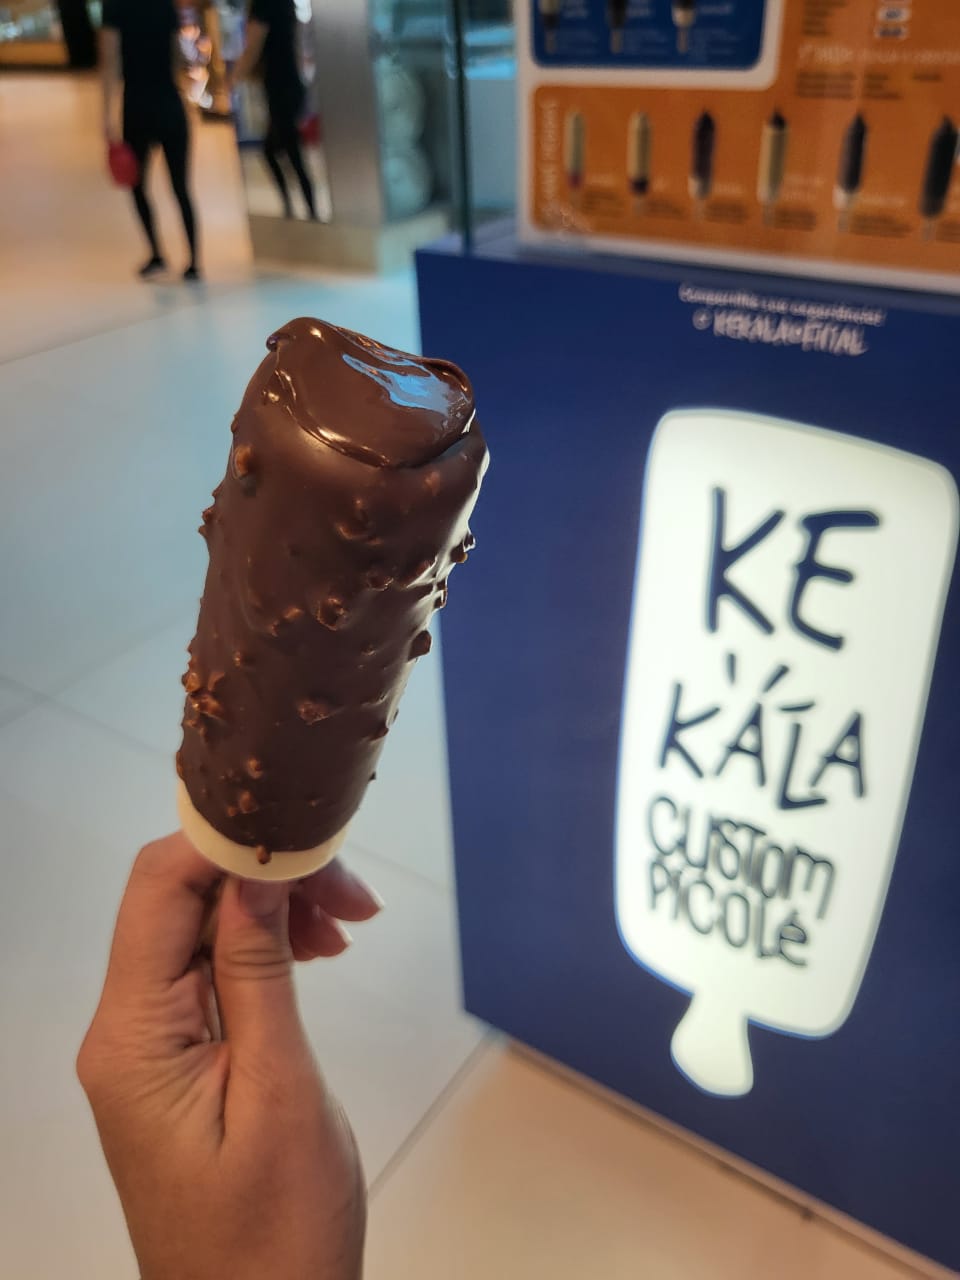 Franquia de picolés customizados, Kekala abre em shoppings da capital